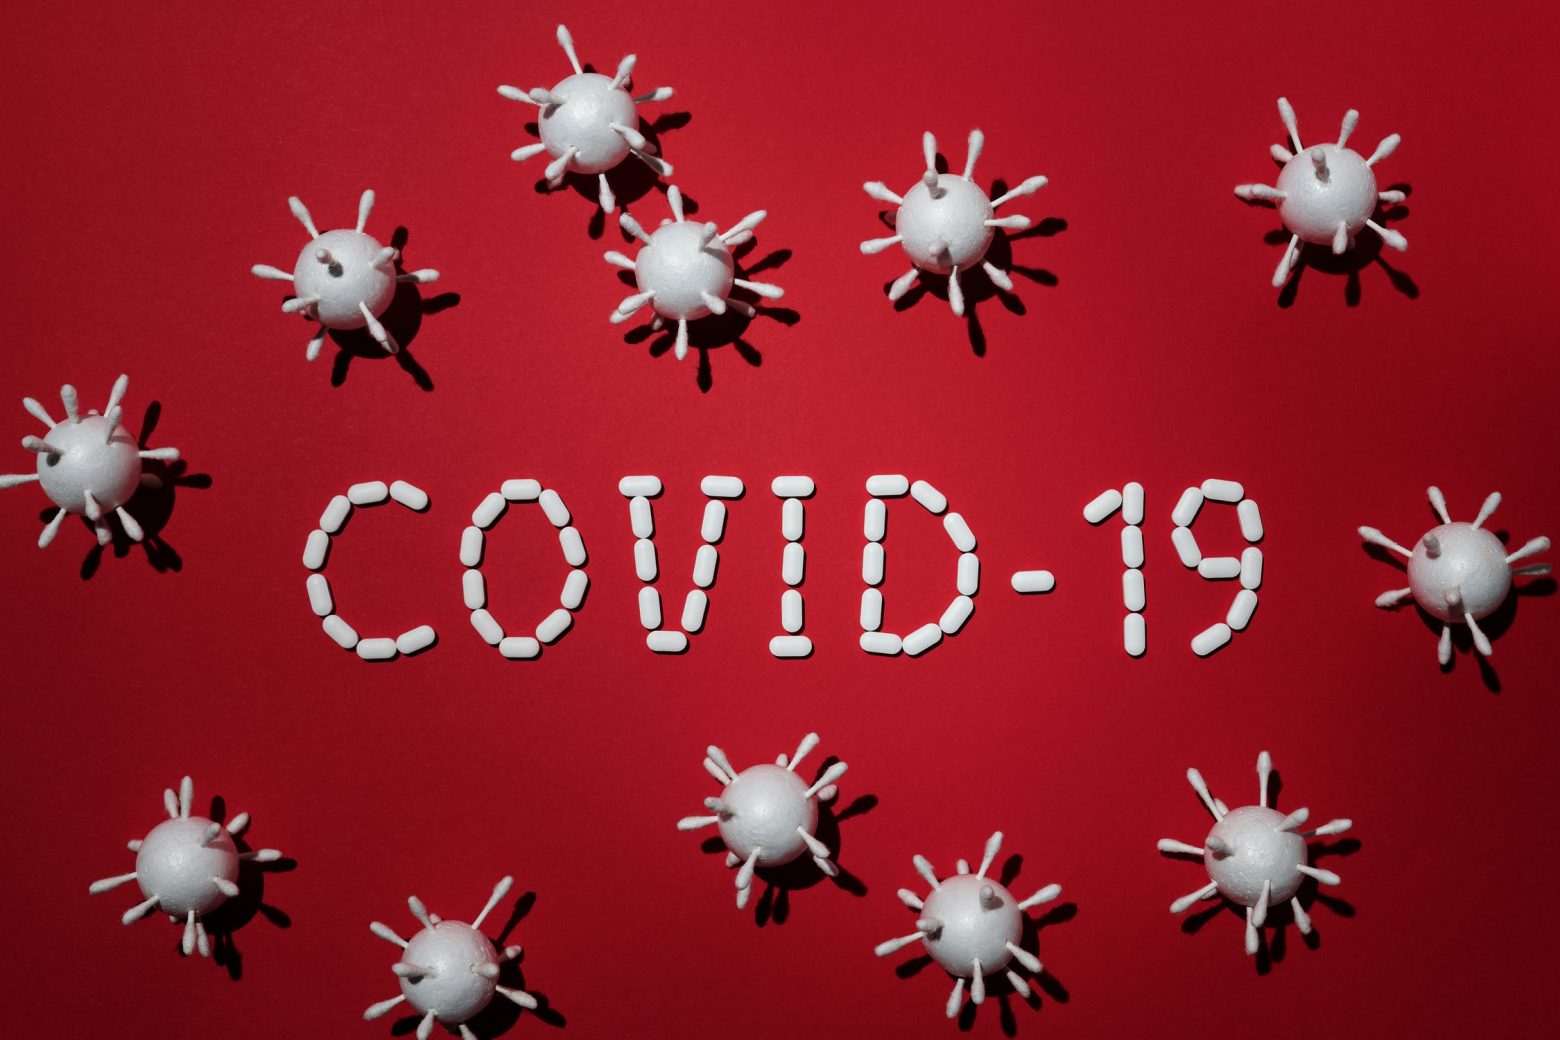 ΗΠΑ - Νέα μελέτη από τα CDC - Η Covid-19 αυξάνει τον κίνδυνο θνησιγένειας